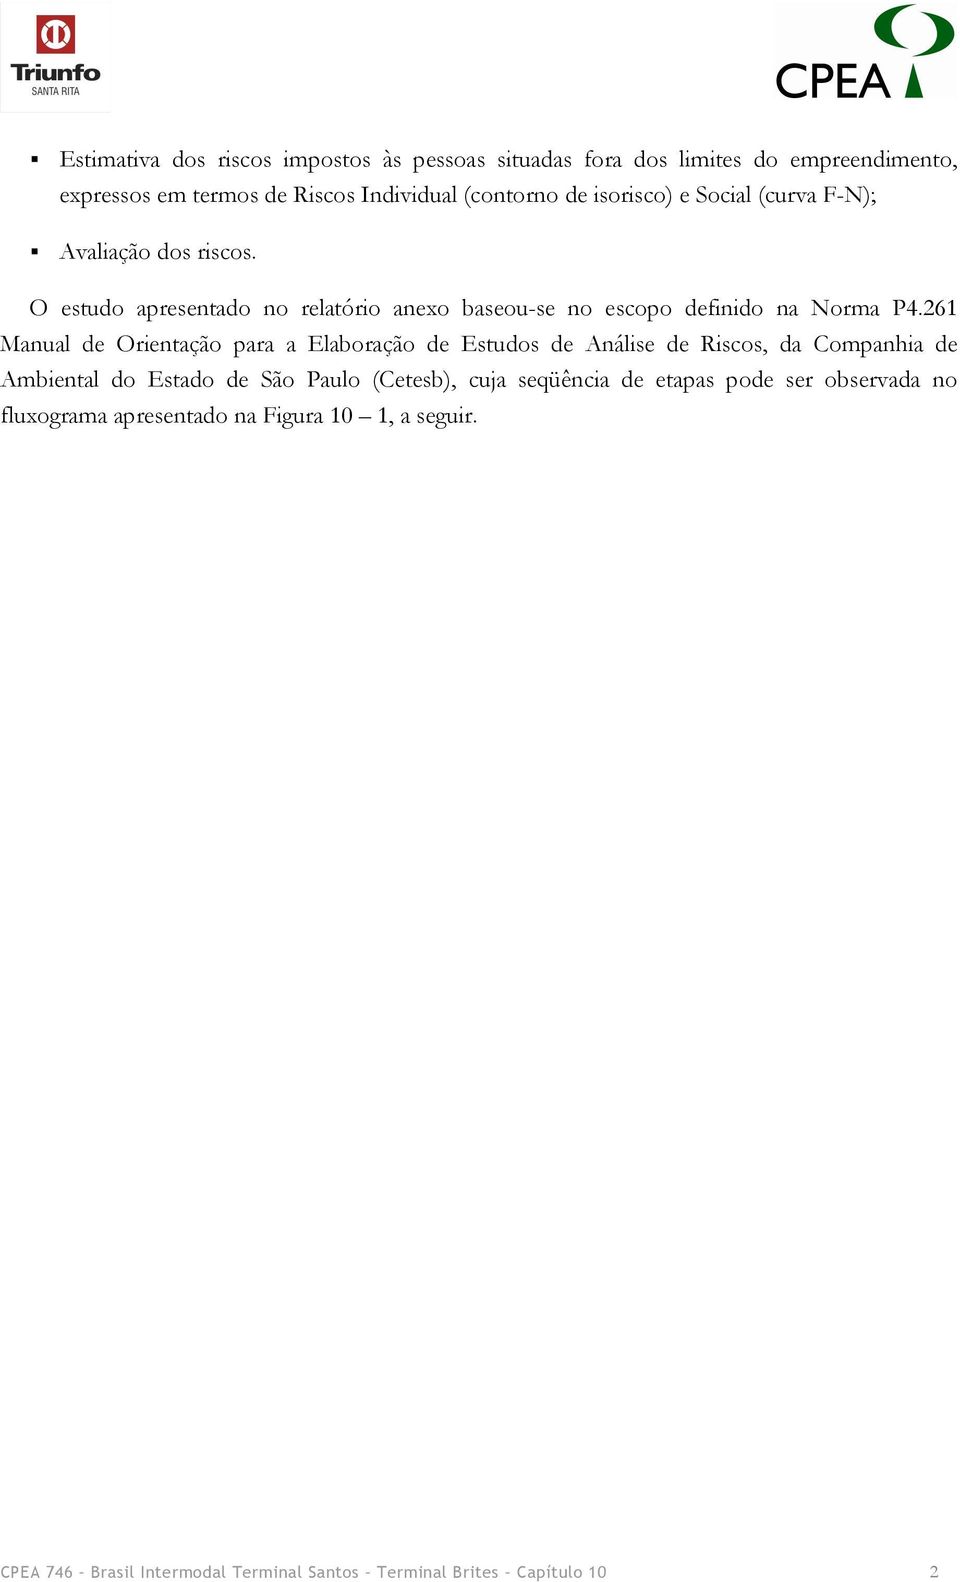 261 Manual de Orientação para a Elaboração de Estudos de Análise de Riscos, da Companhia de Ambiental do Estado de São Paulo (Cetesb), cuja